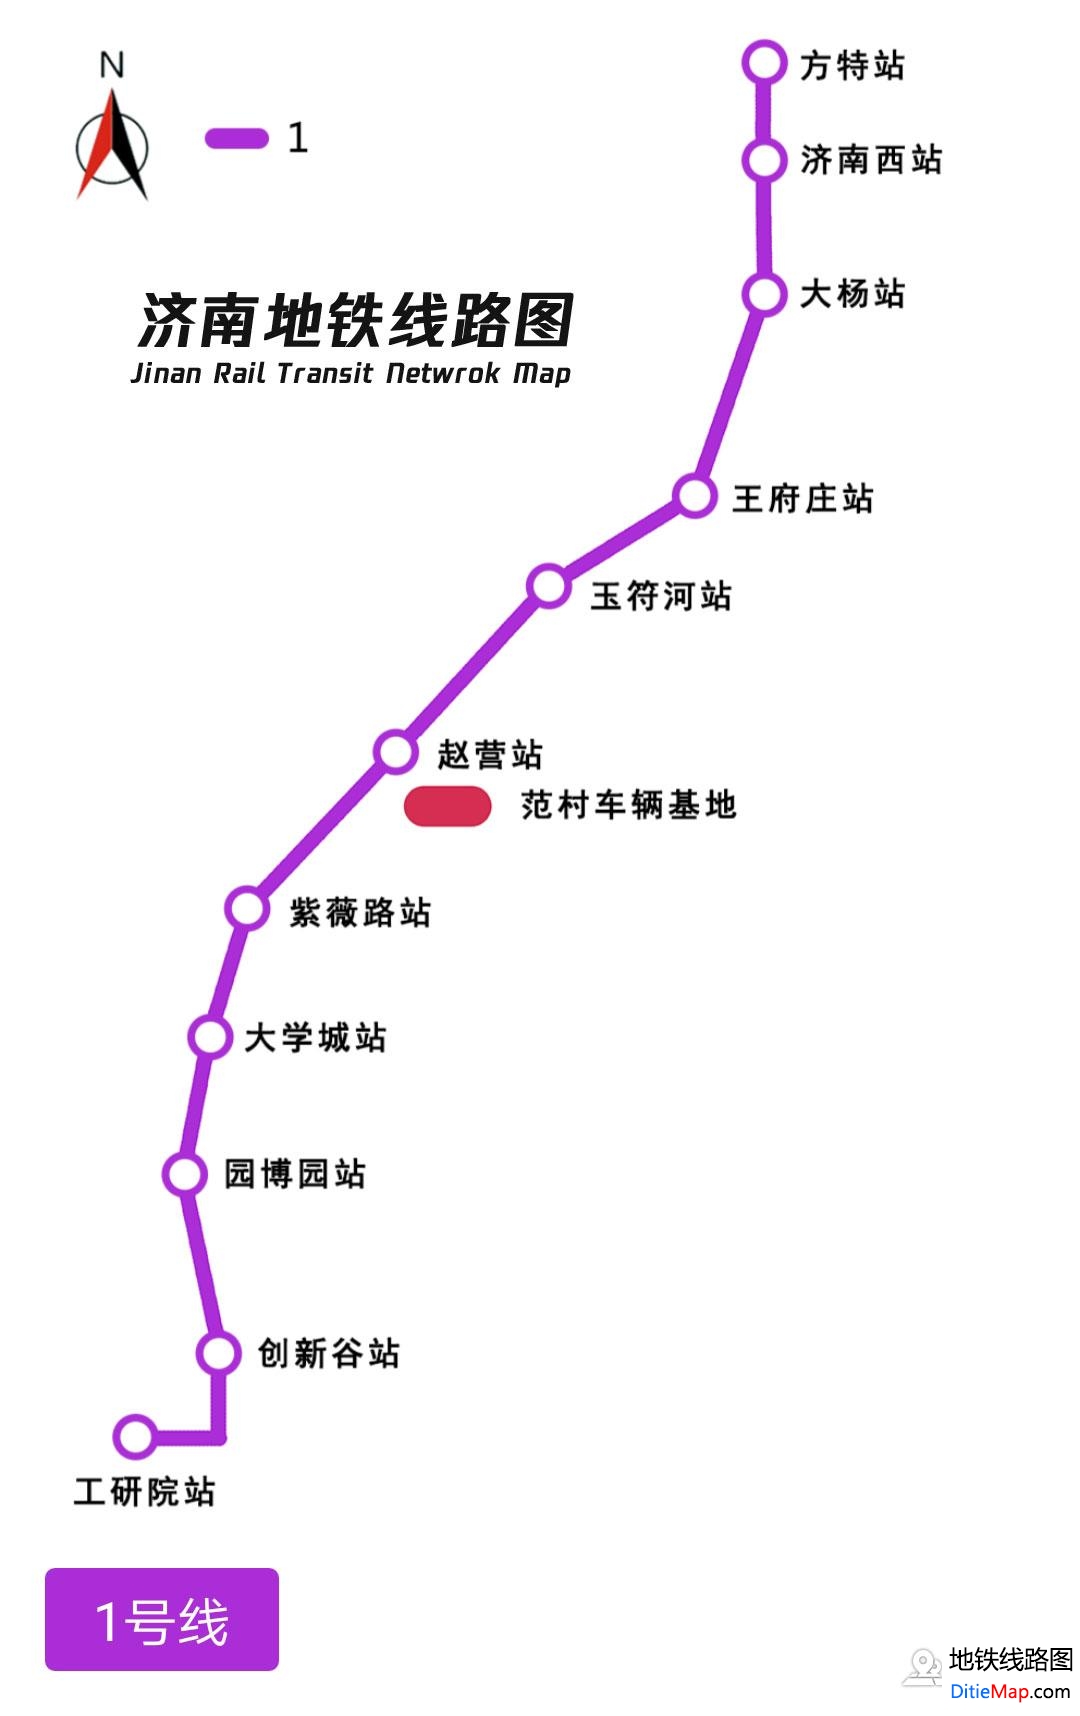 济南地铁线路图 运营时间票价站点 查询下载 济南地铁线路图 济南地铁